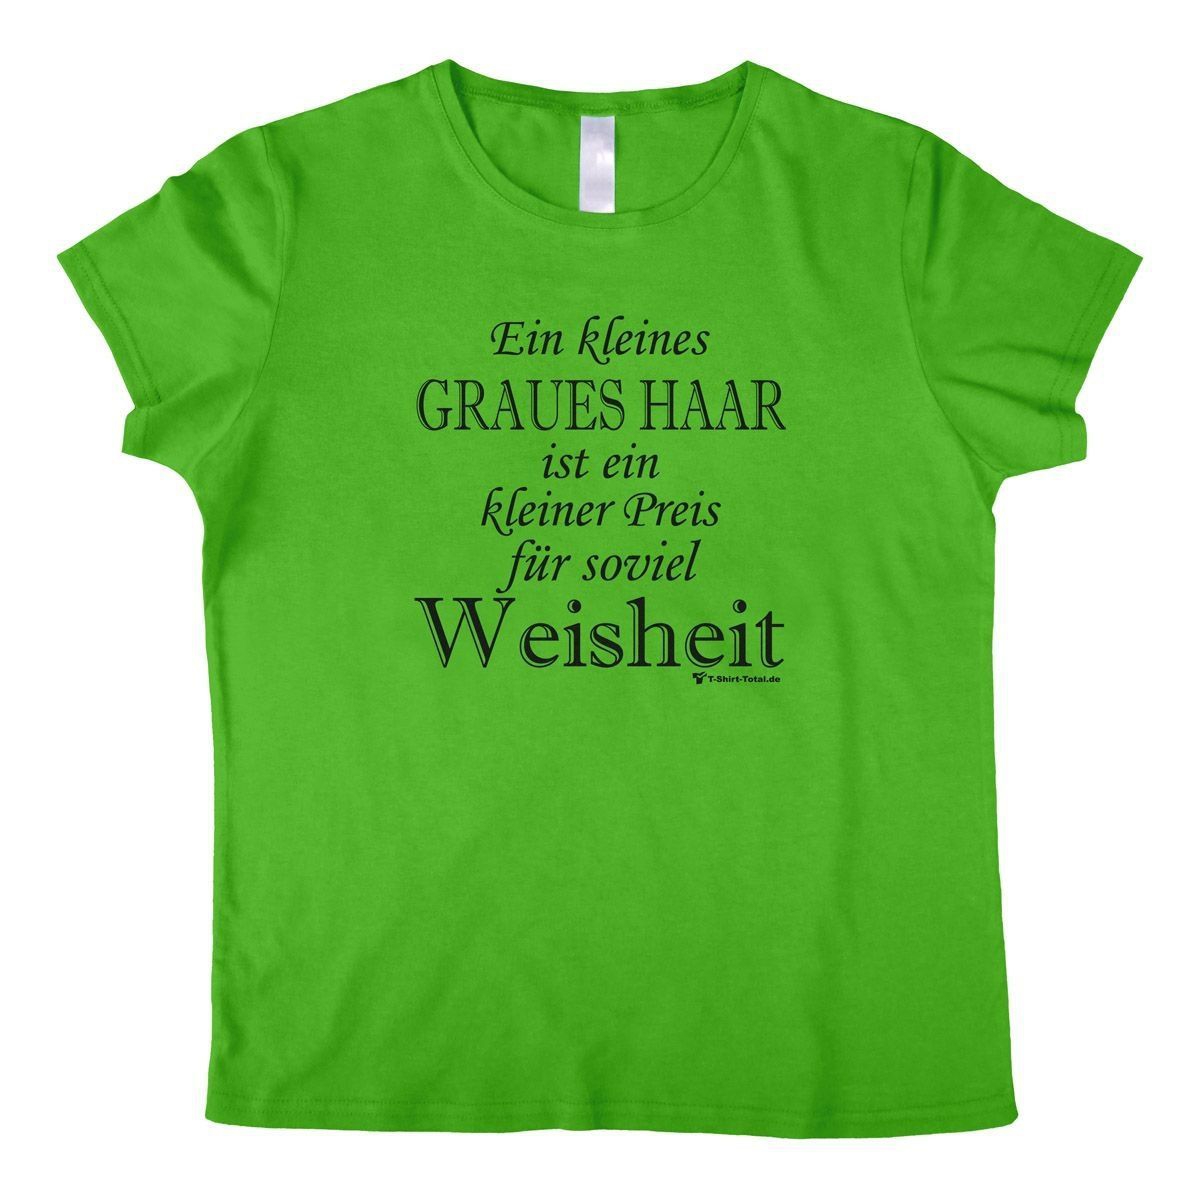 Graues Haar Woman T-Shirt grün Small